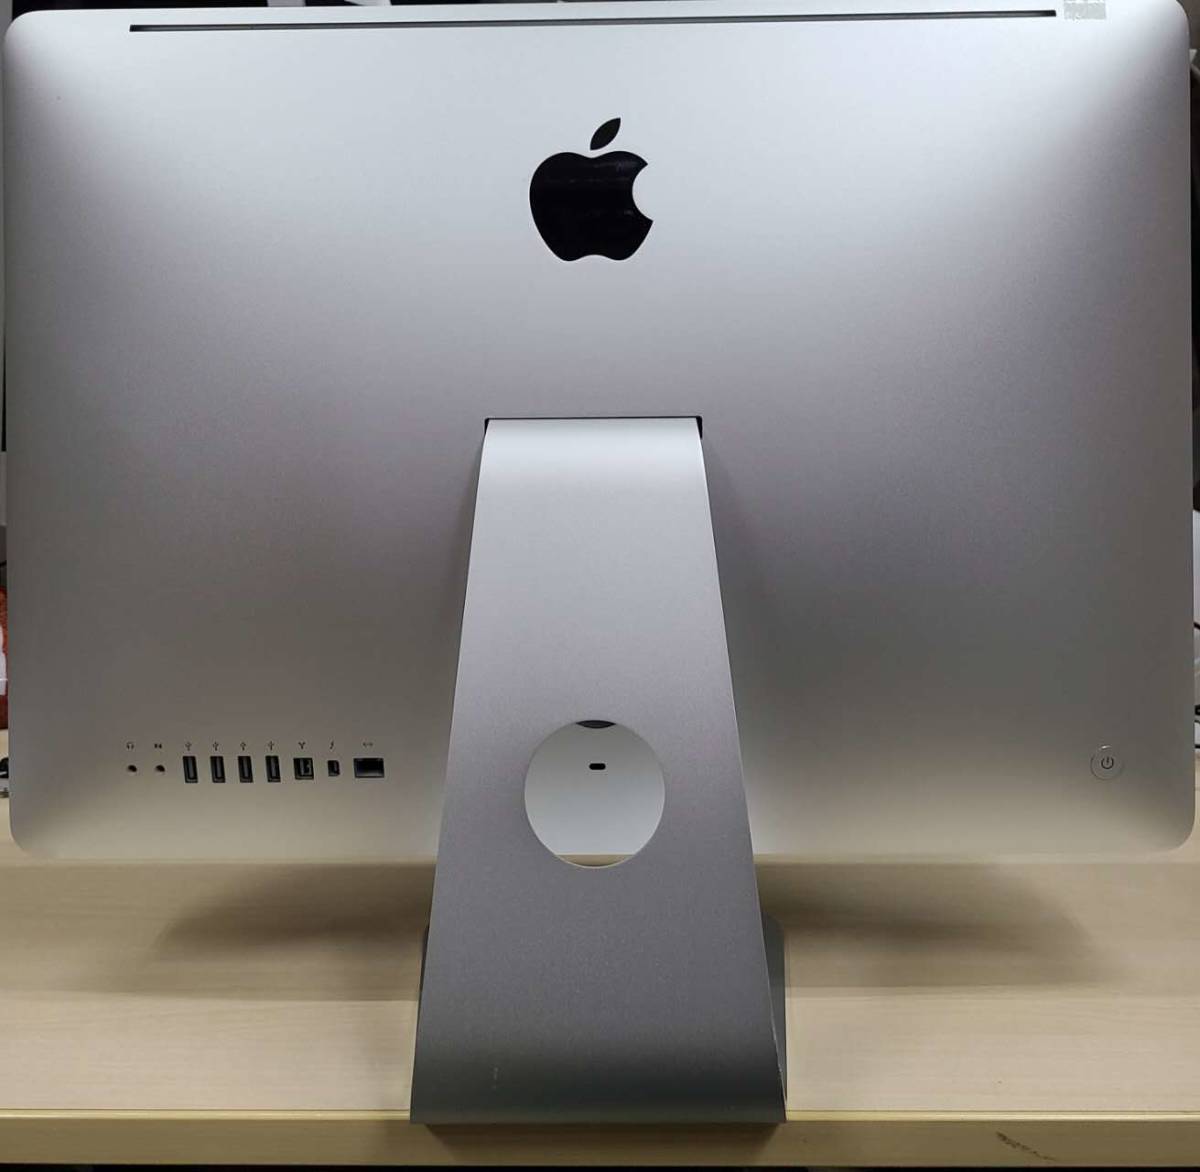 中古品 Apple iMac A1311 iMac 21.5-inch Late 2011 Intel Core i5 2.5GHz メモリ4GB 液晶不良 ジャンク 06_画像2